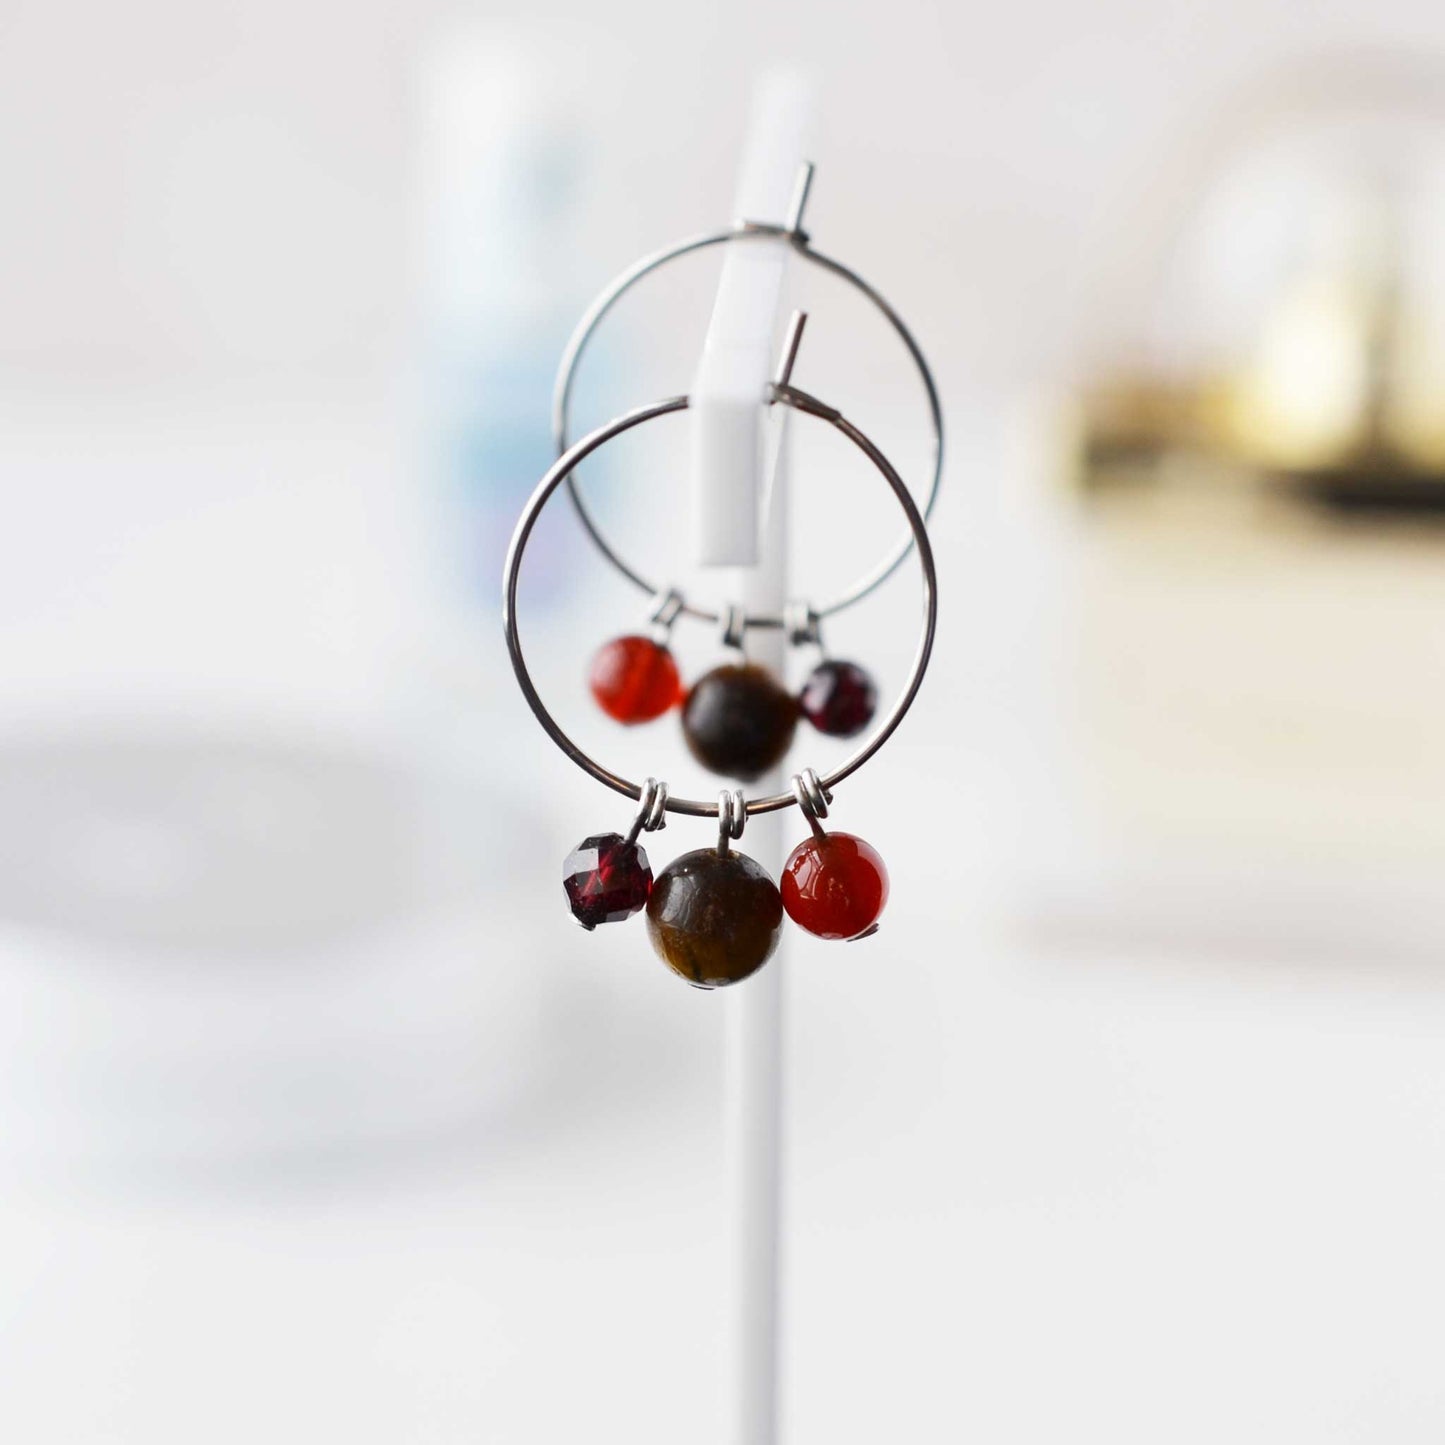 Brown, orange & red gemstone bead hoop earrings hanging against soft focus background